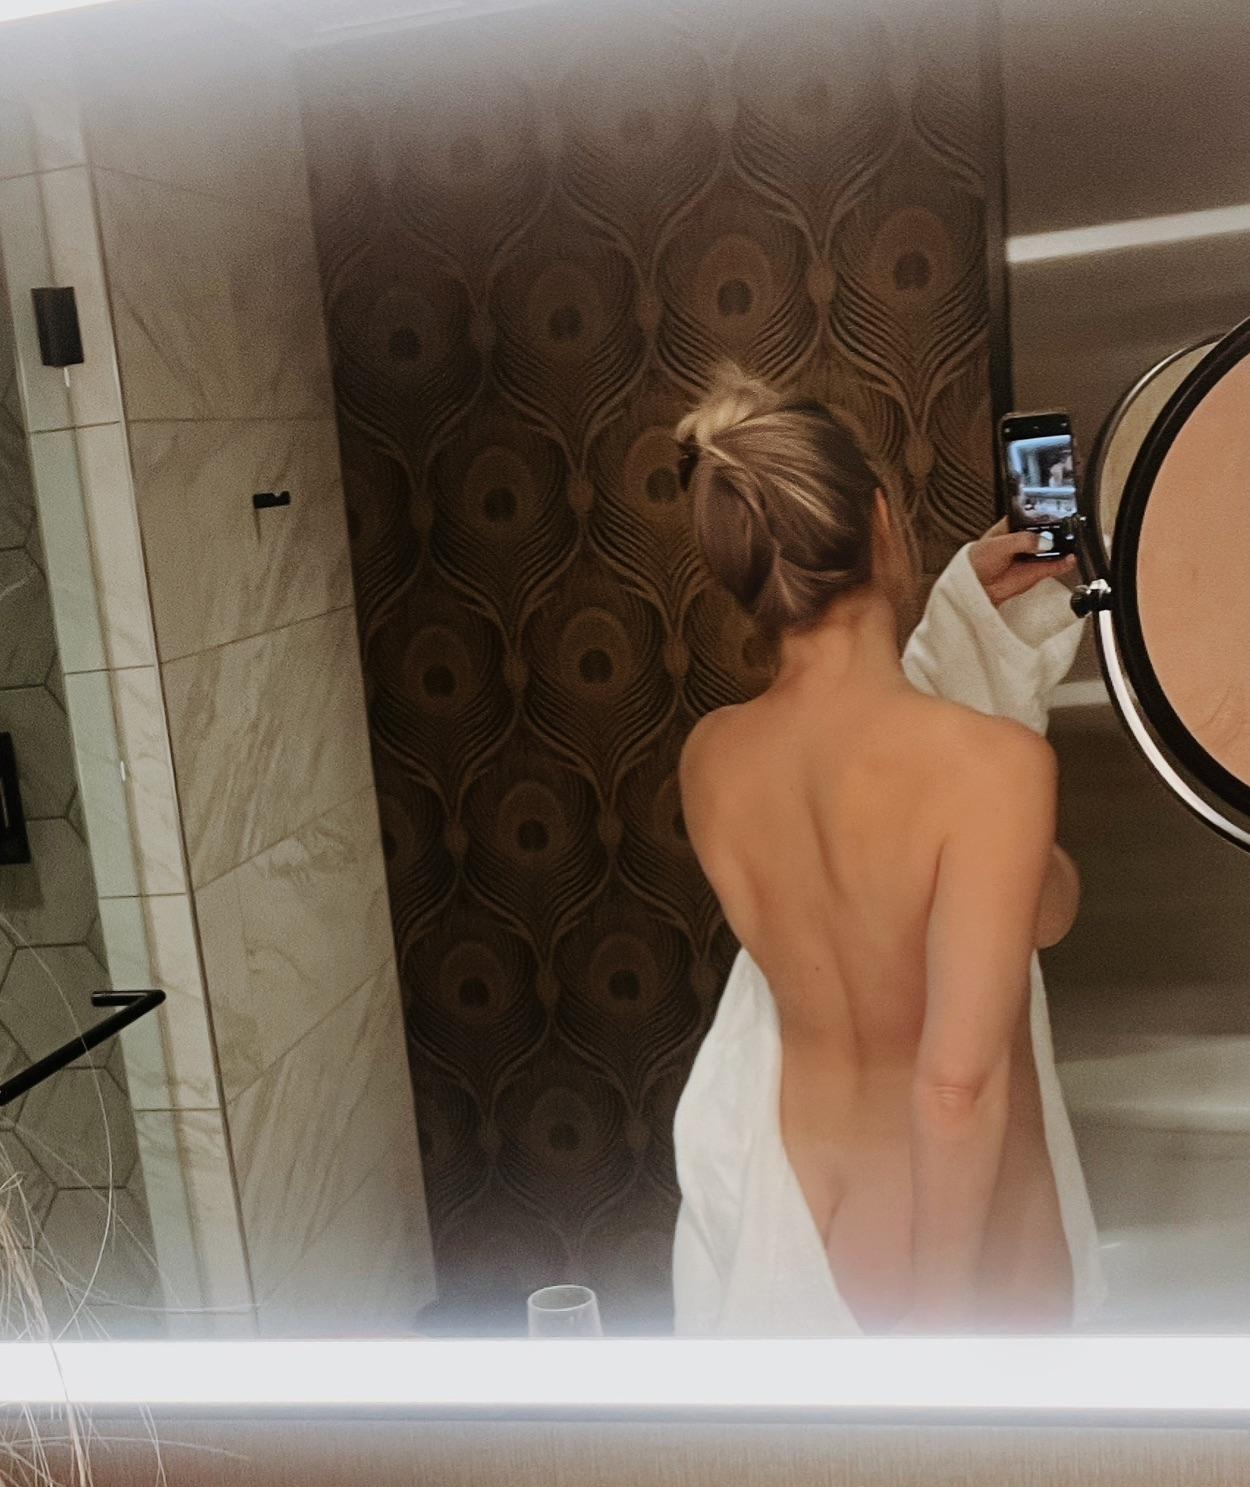 kat wonders nude mirror bath robe strip onlyfans set leaked iicvag